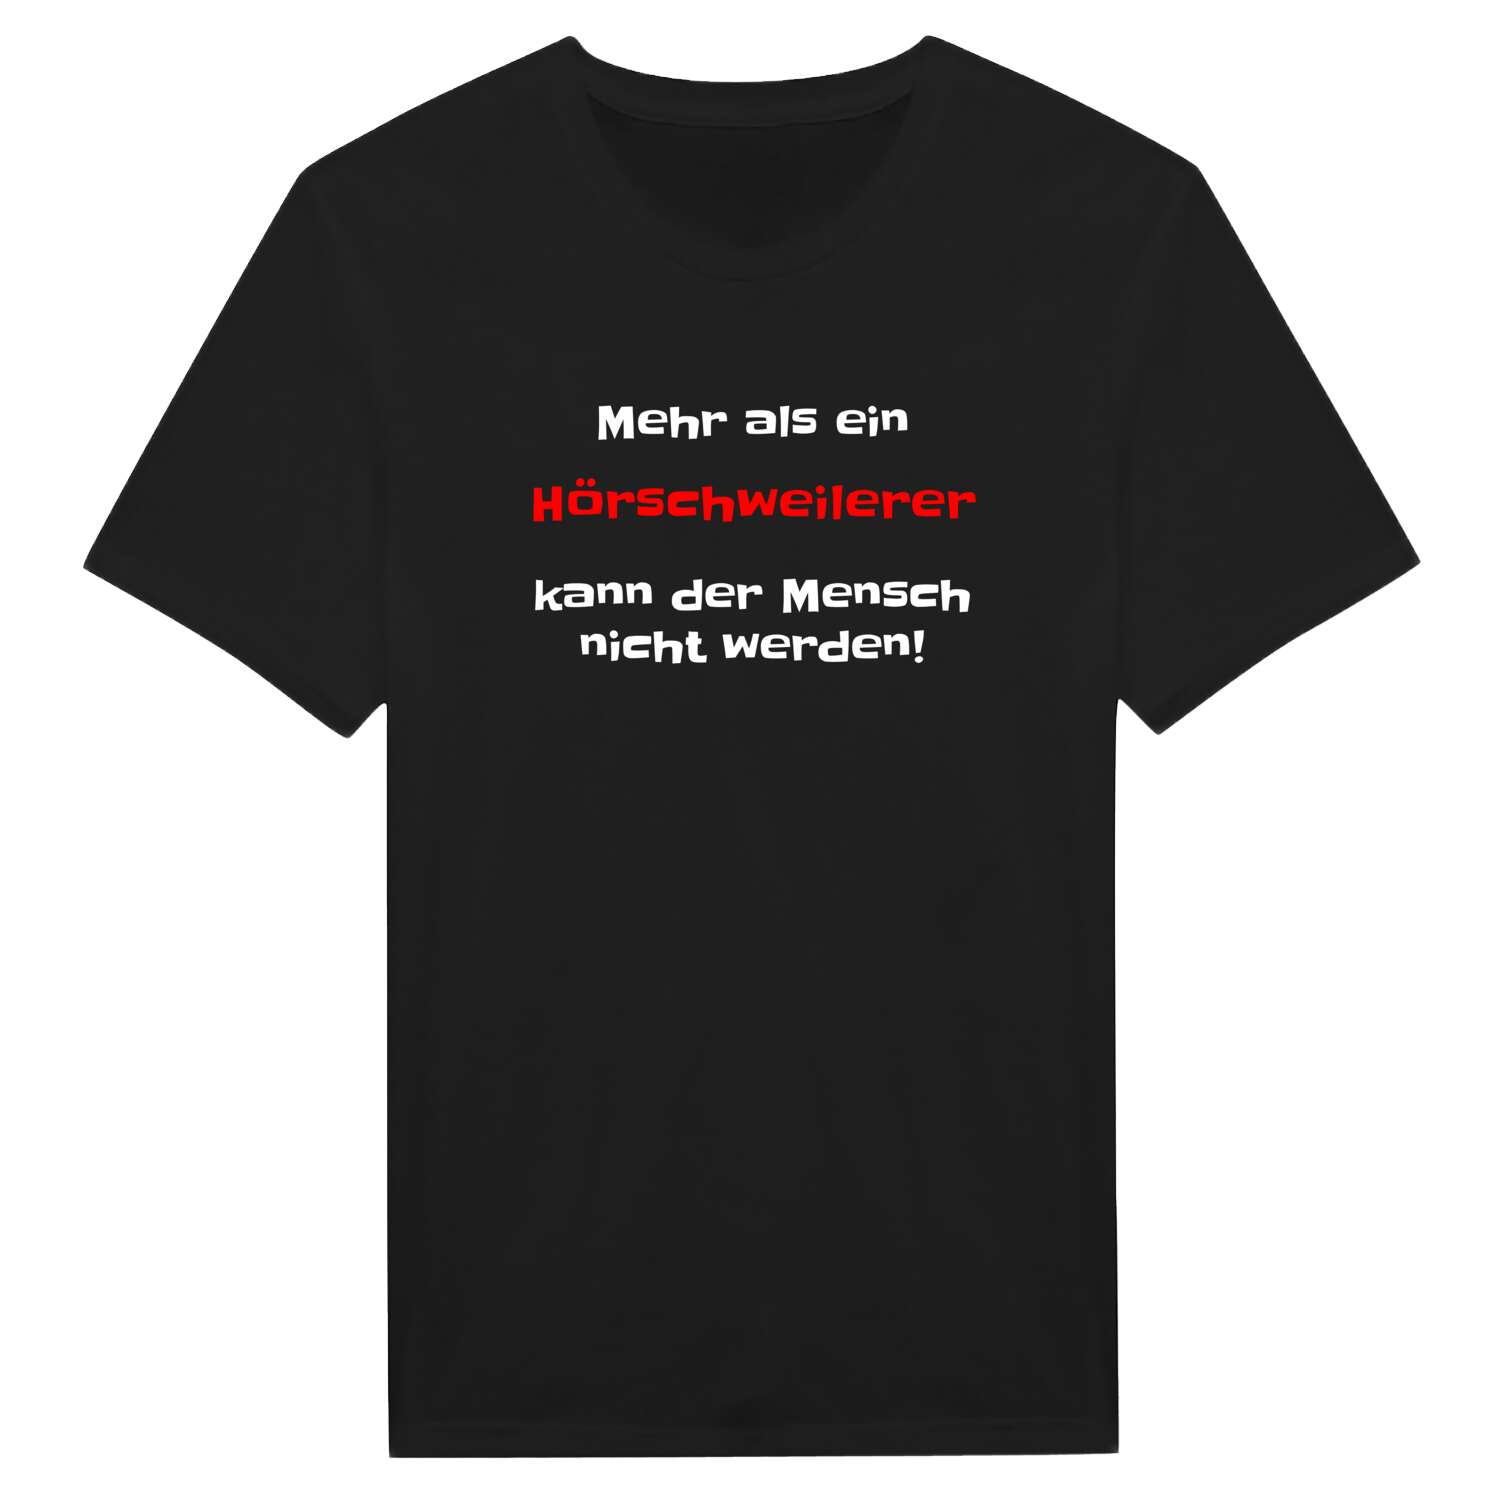 Hörschweiler T-Shirt »Mehr als ein«